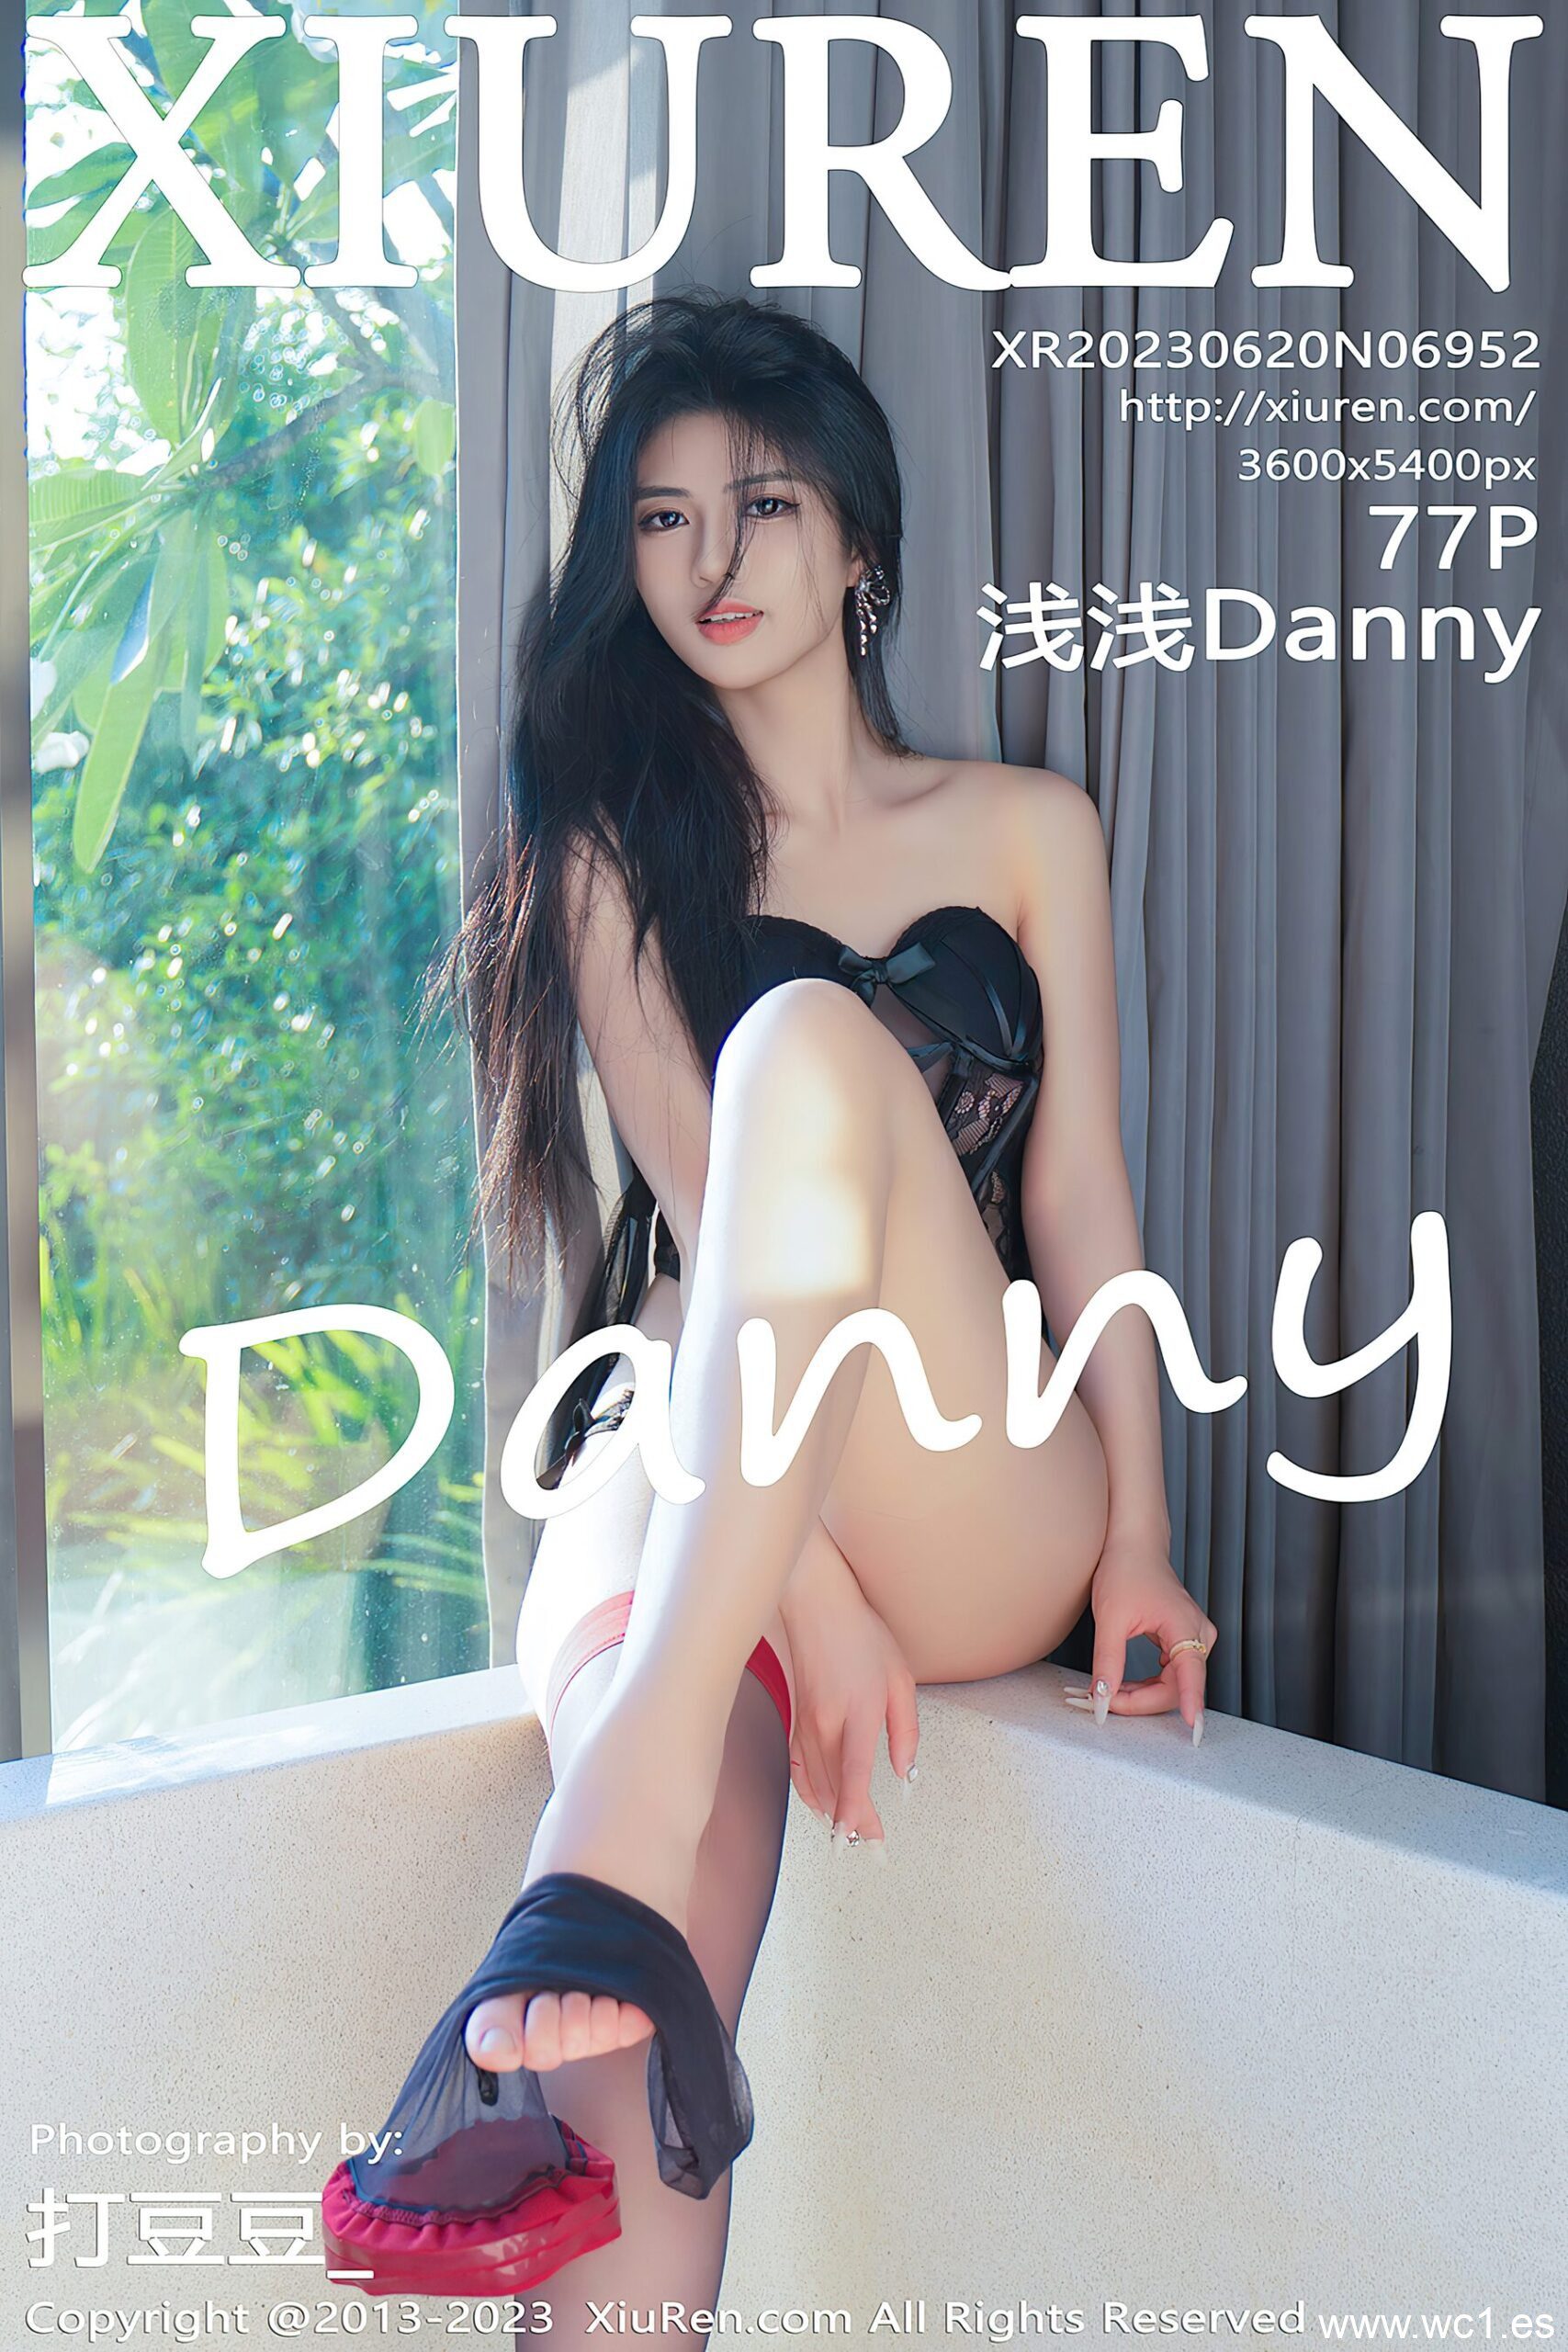 浅浅Danny（6952）